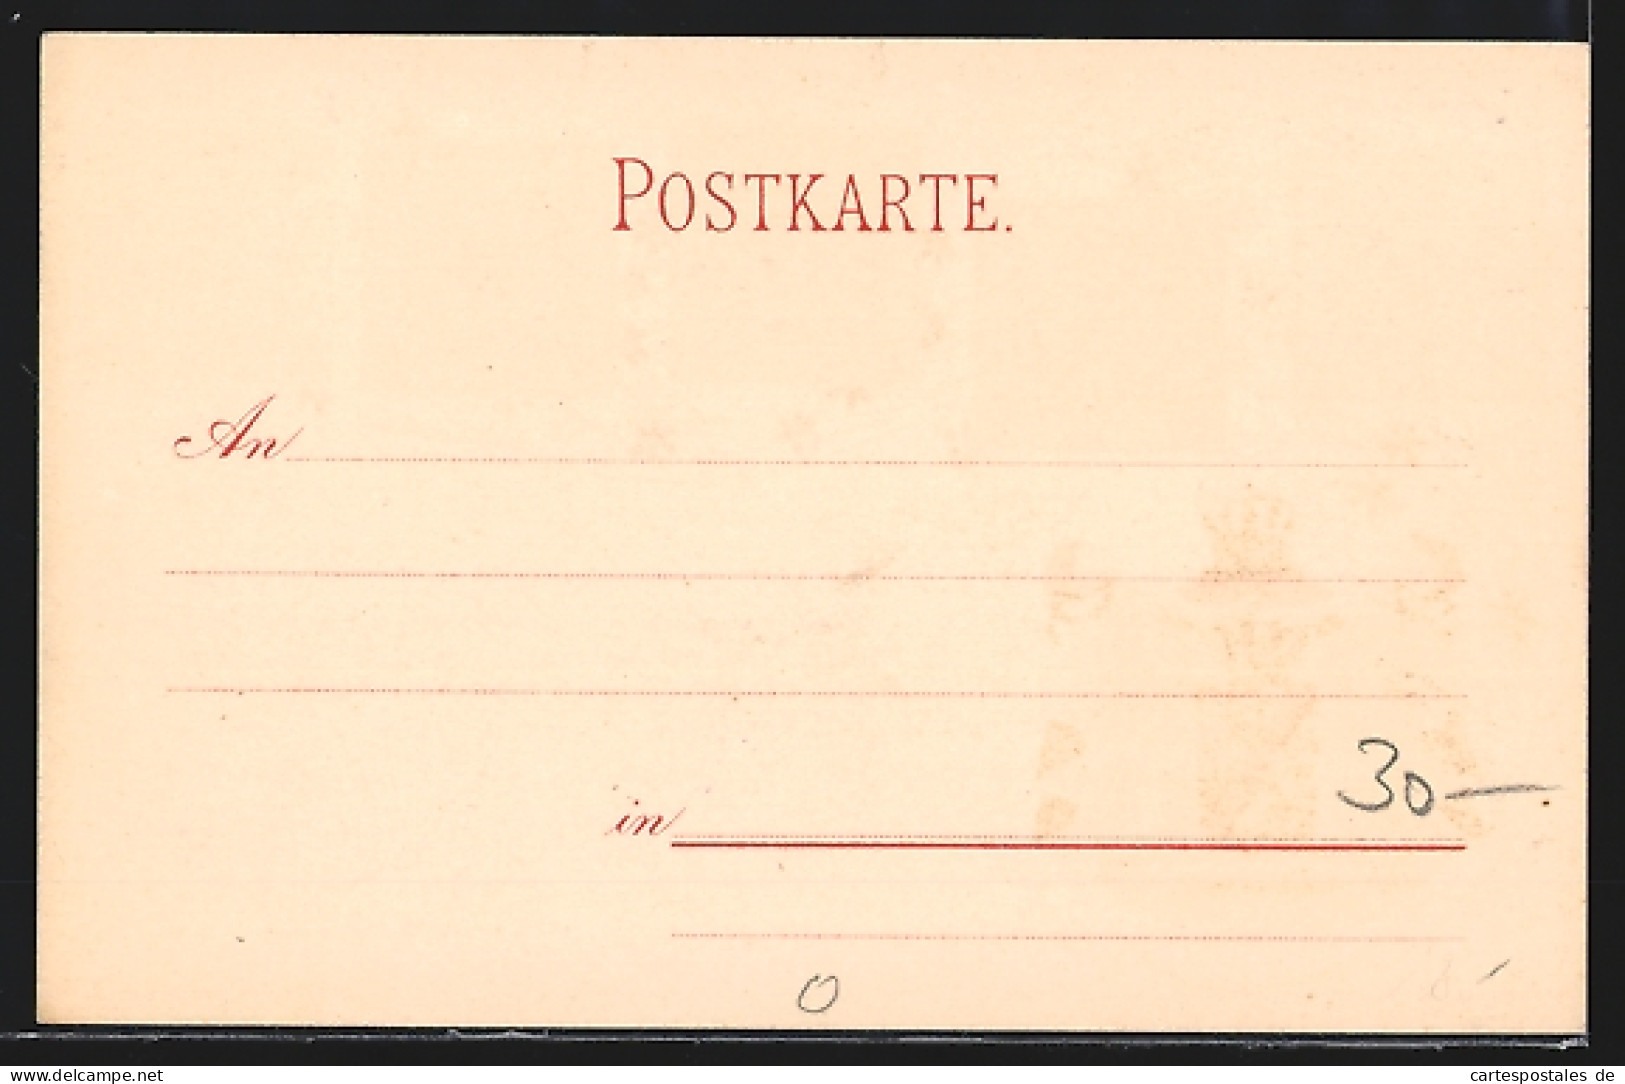 AK Baden, Ersten Briefmarken Mit Wappen  - Timbres (représentations)